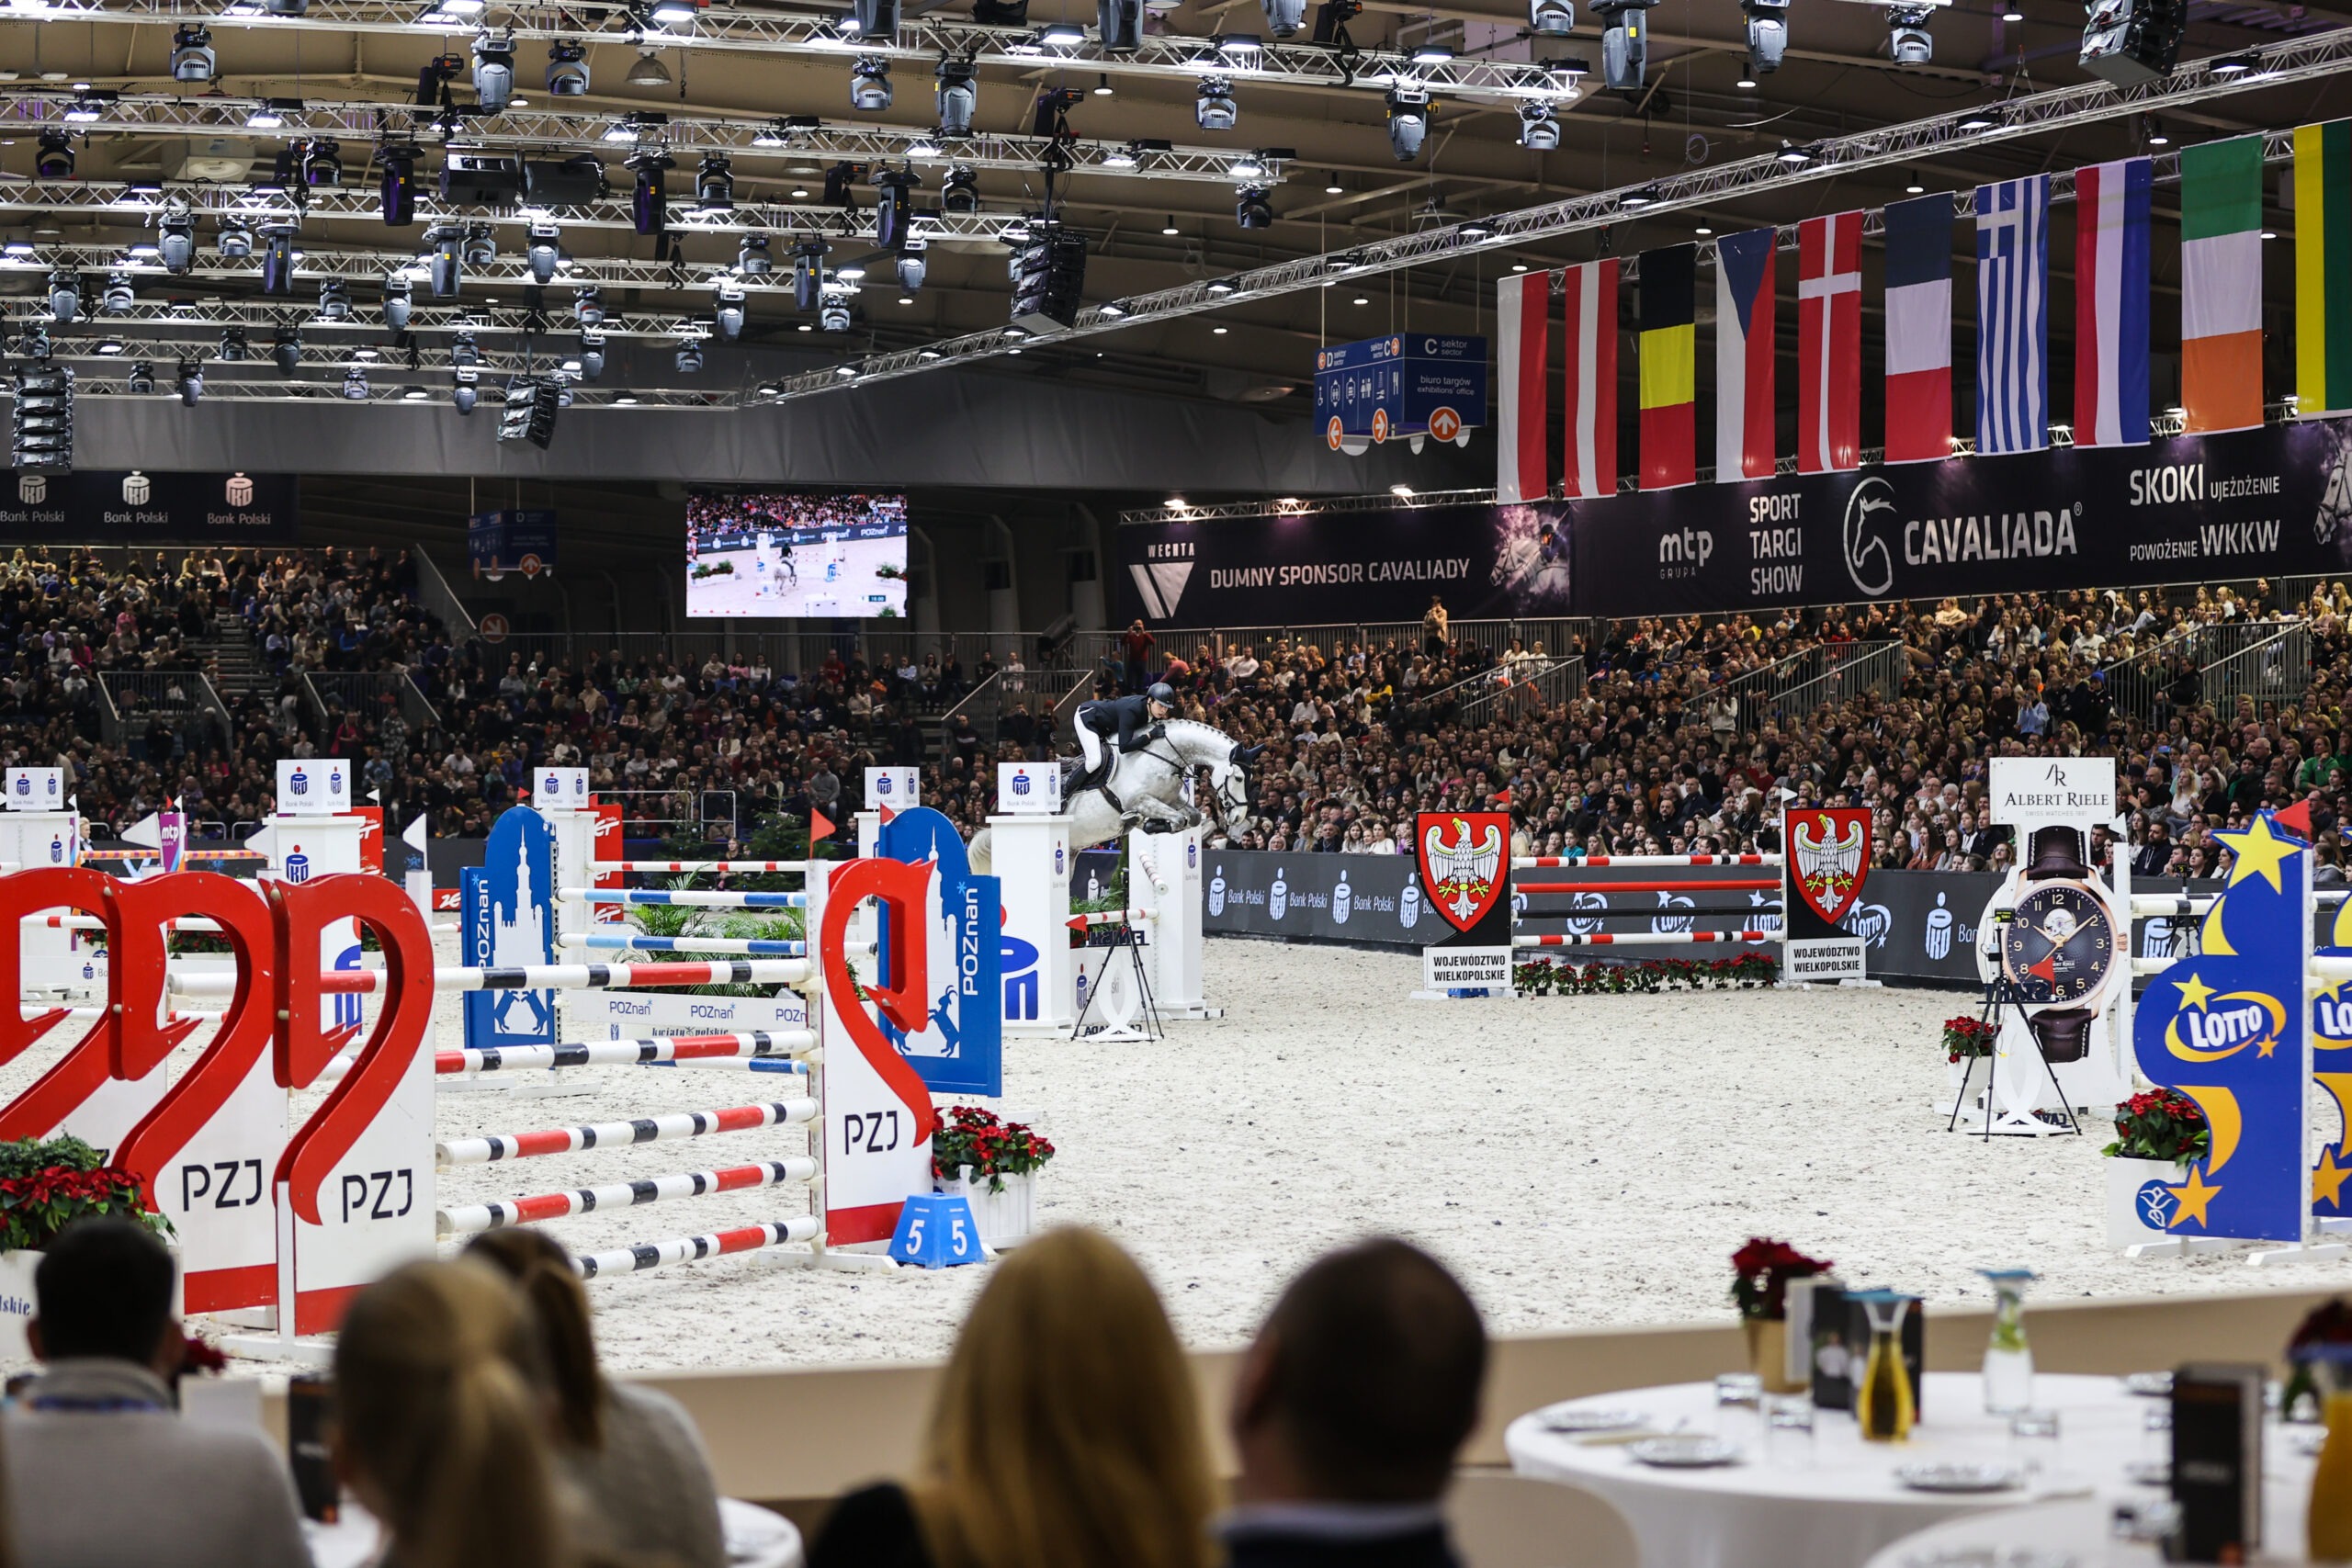 Na zdjęciu zawody konne, jeździec na koniu w trakcie wykonywania skoku przez przeszkodę, na trybunach publiczność, nad trybunami flagi różnych państw